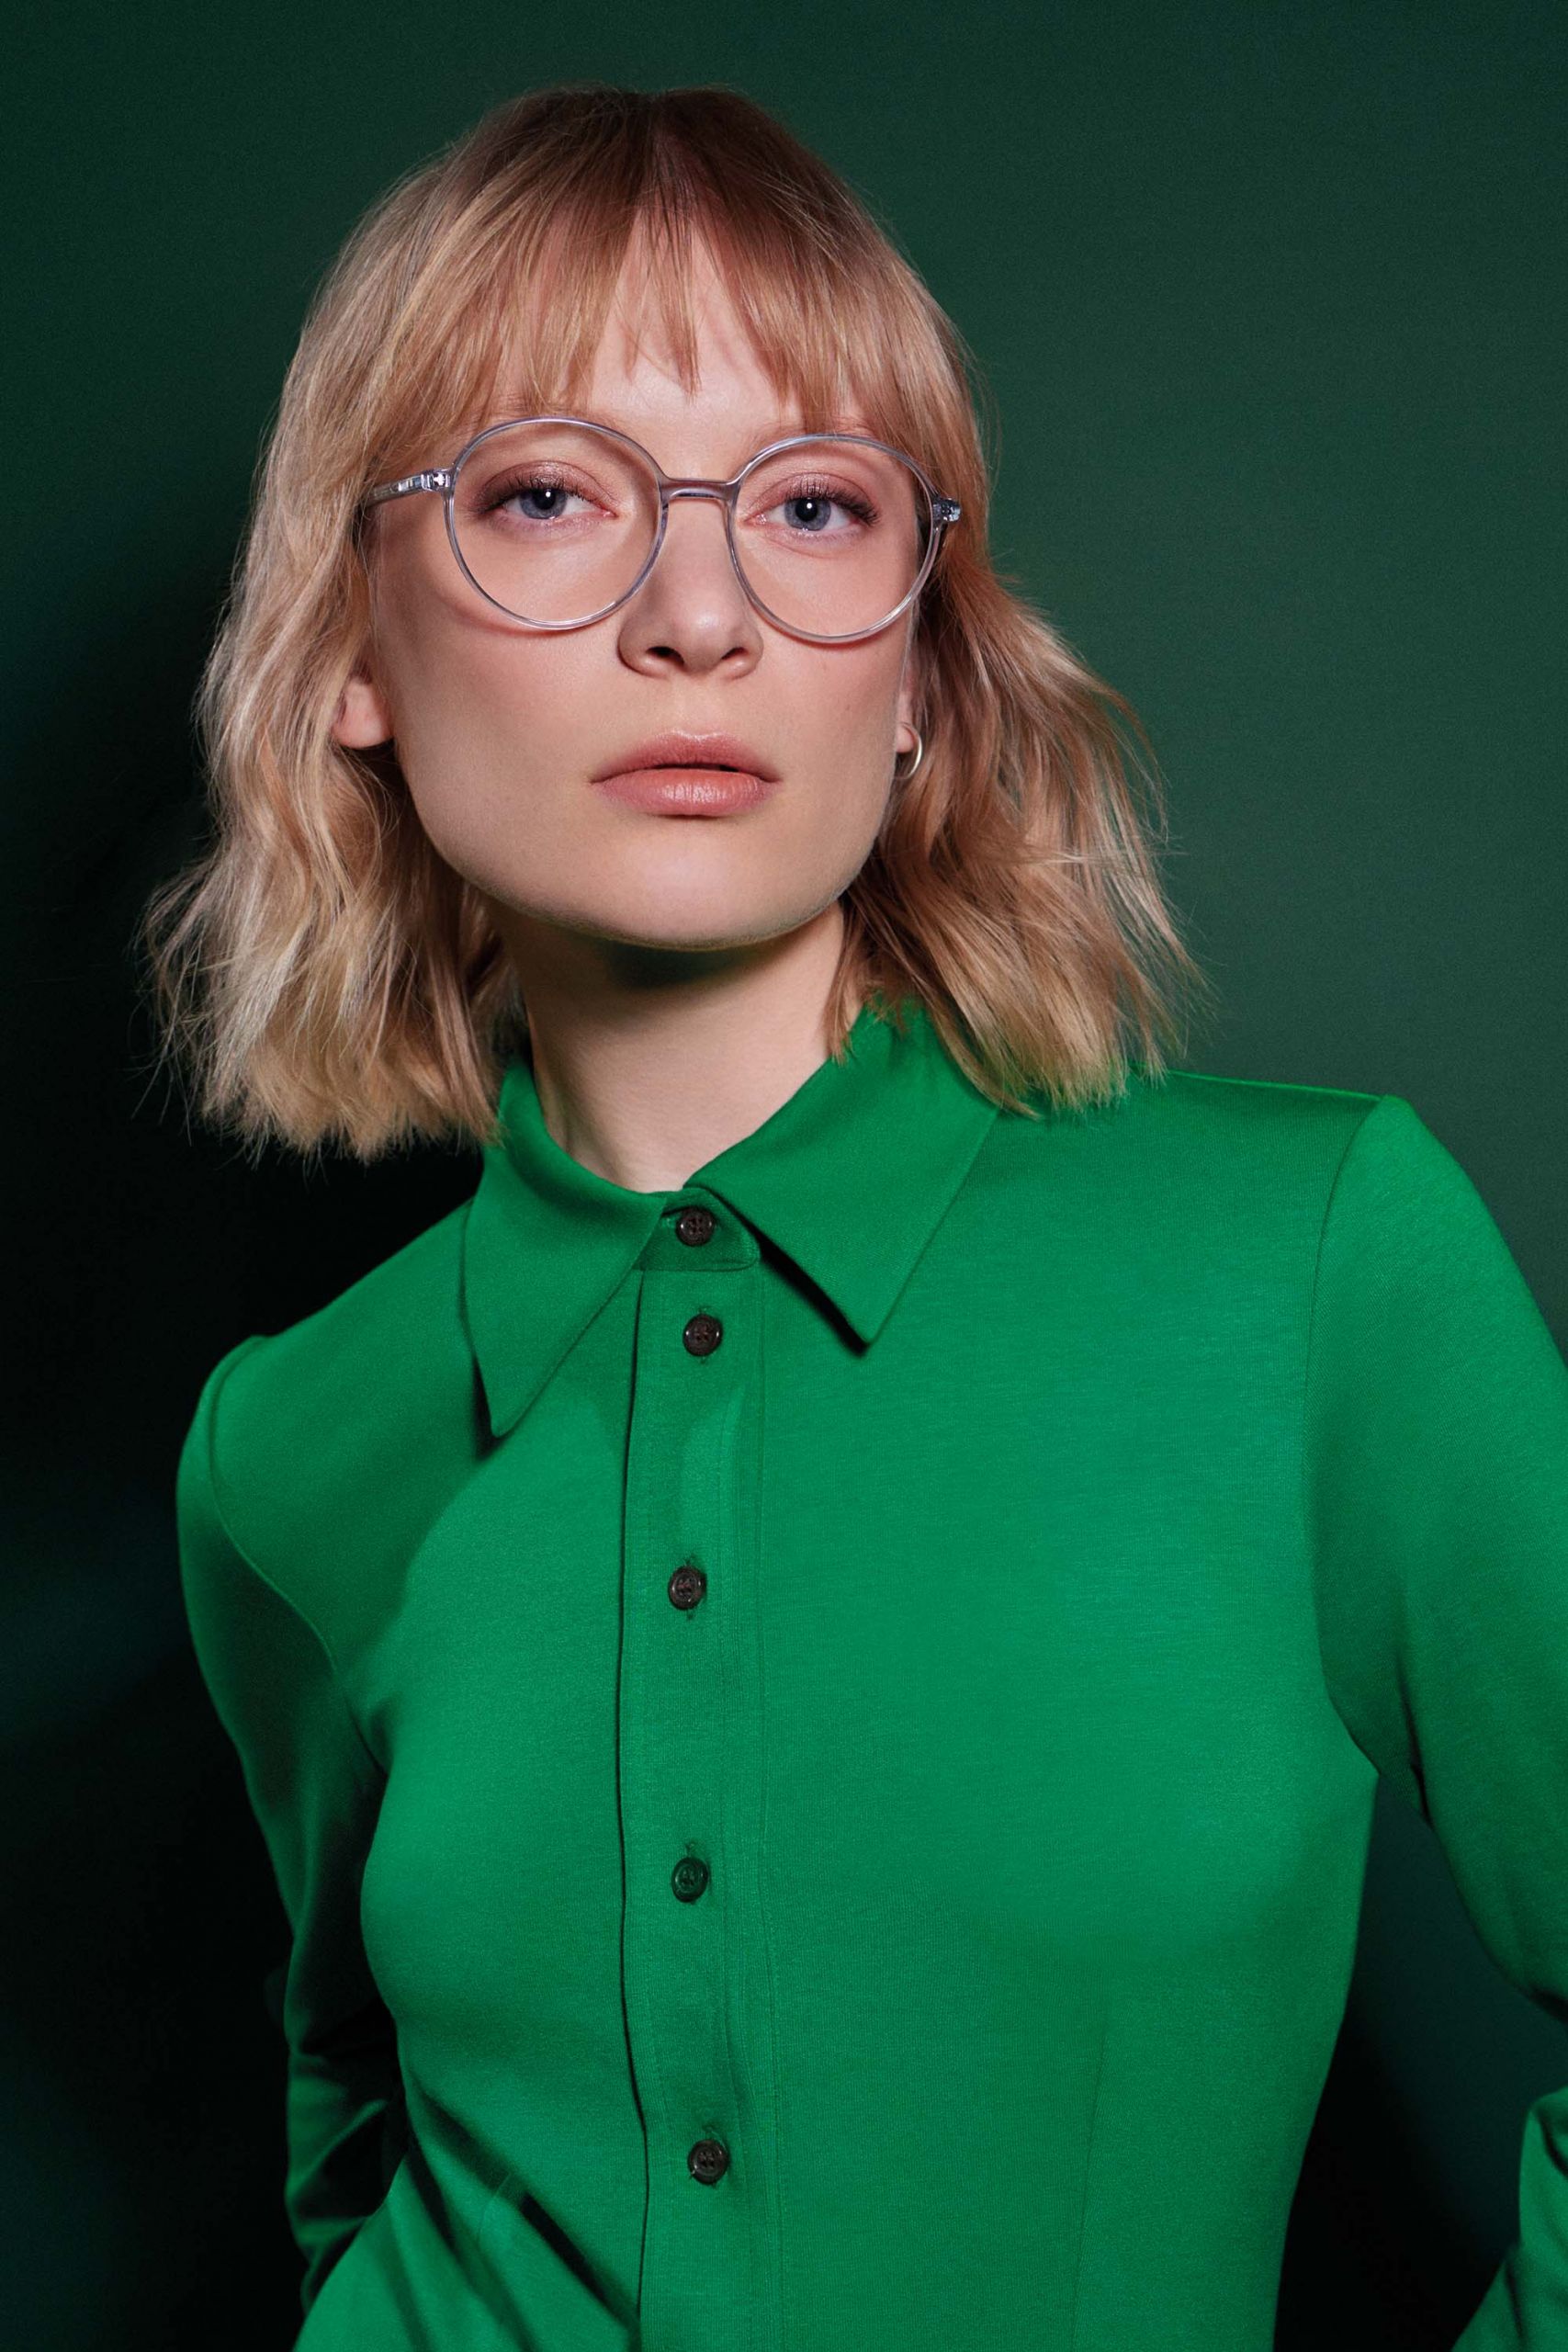 Frau mit runder Brille und grünem Hemd